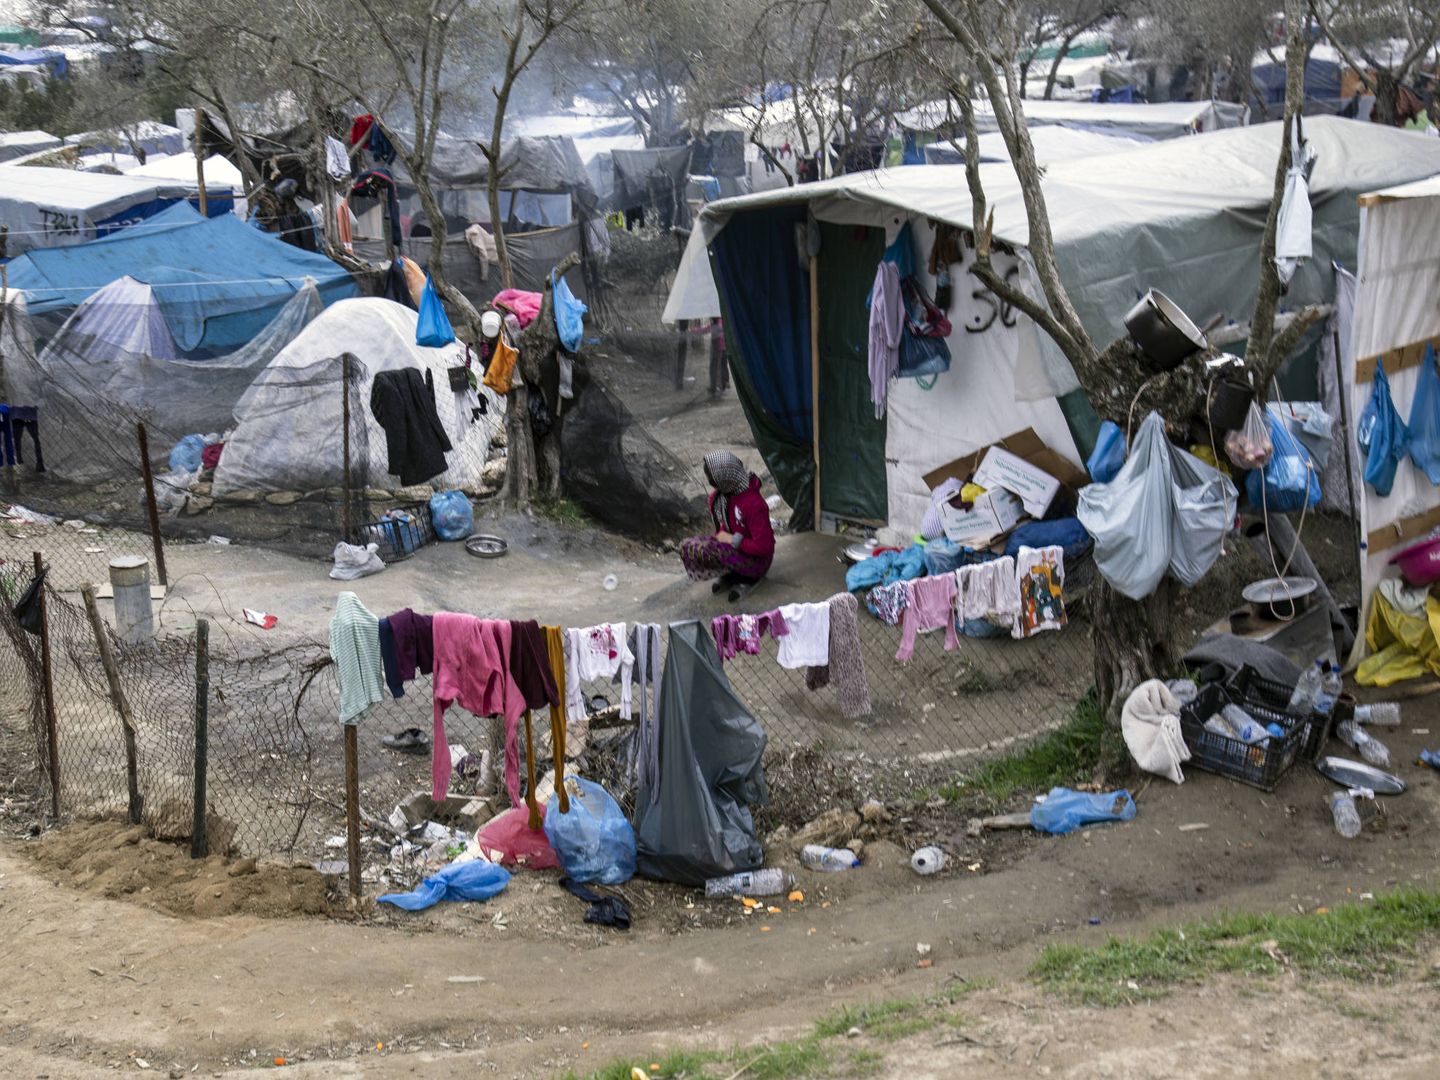 El campamento de refugiados de Moria, en Lesbos. (André Naddeo / UOL)